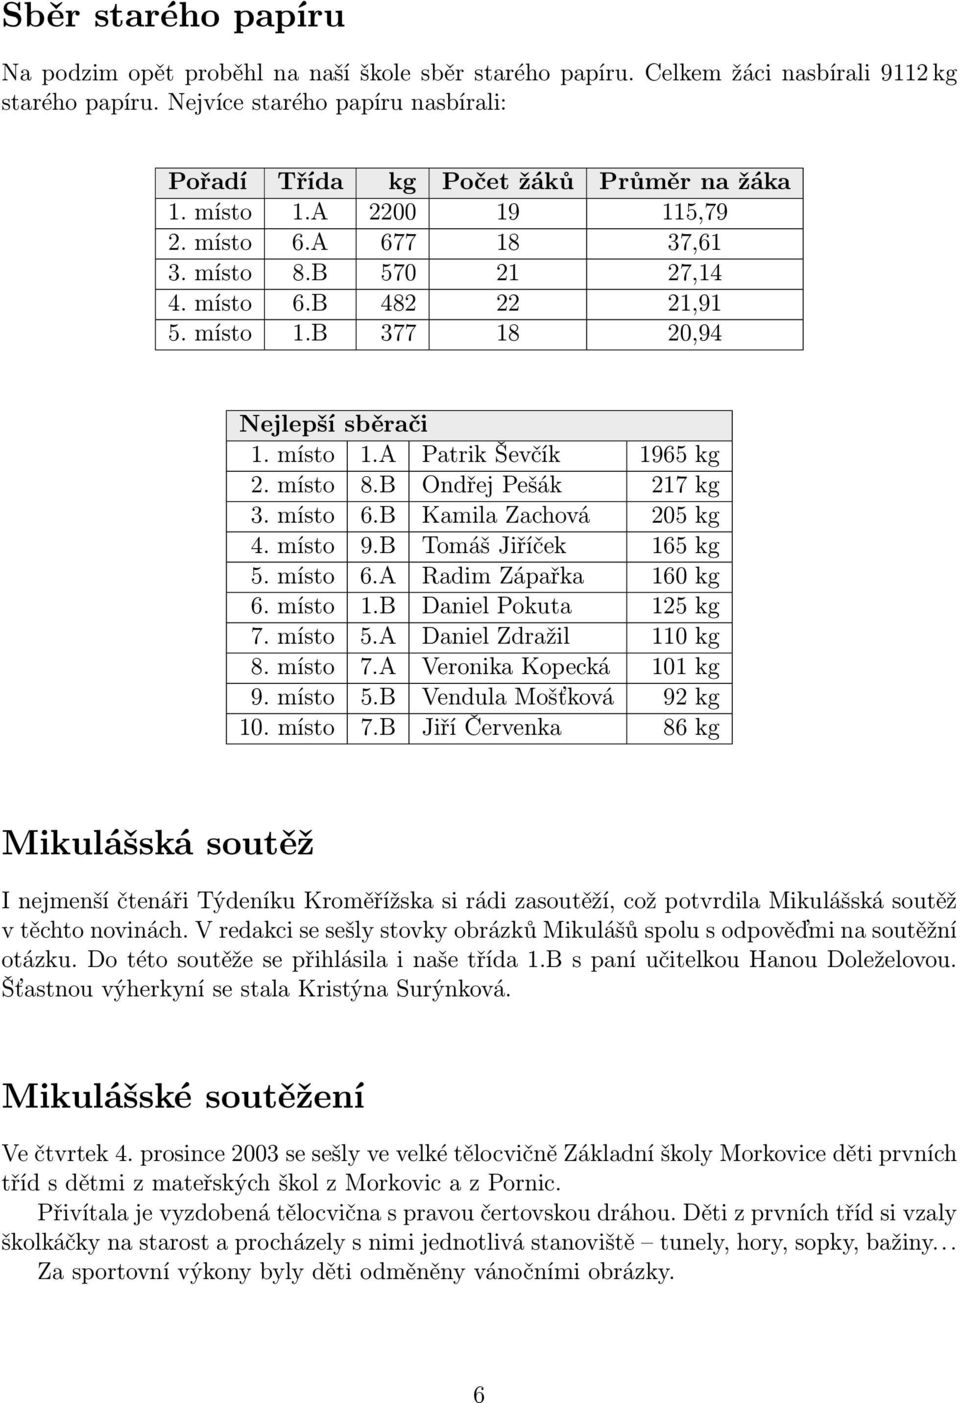 místo 1.A Patrik Ševčík 1965 kg 2. místo 8.B Ondřej Pešák 217 kg 3. místo 6.B Kamila Zachová 205 kg 4. místo 9.B Tomáš Jiříček 165 kg 5. místo 6.A Radim Zápařka 160 kg 6. místo 1.